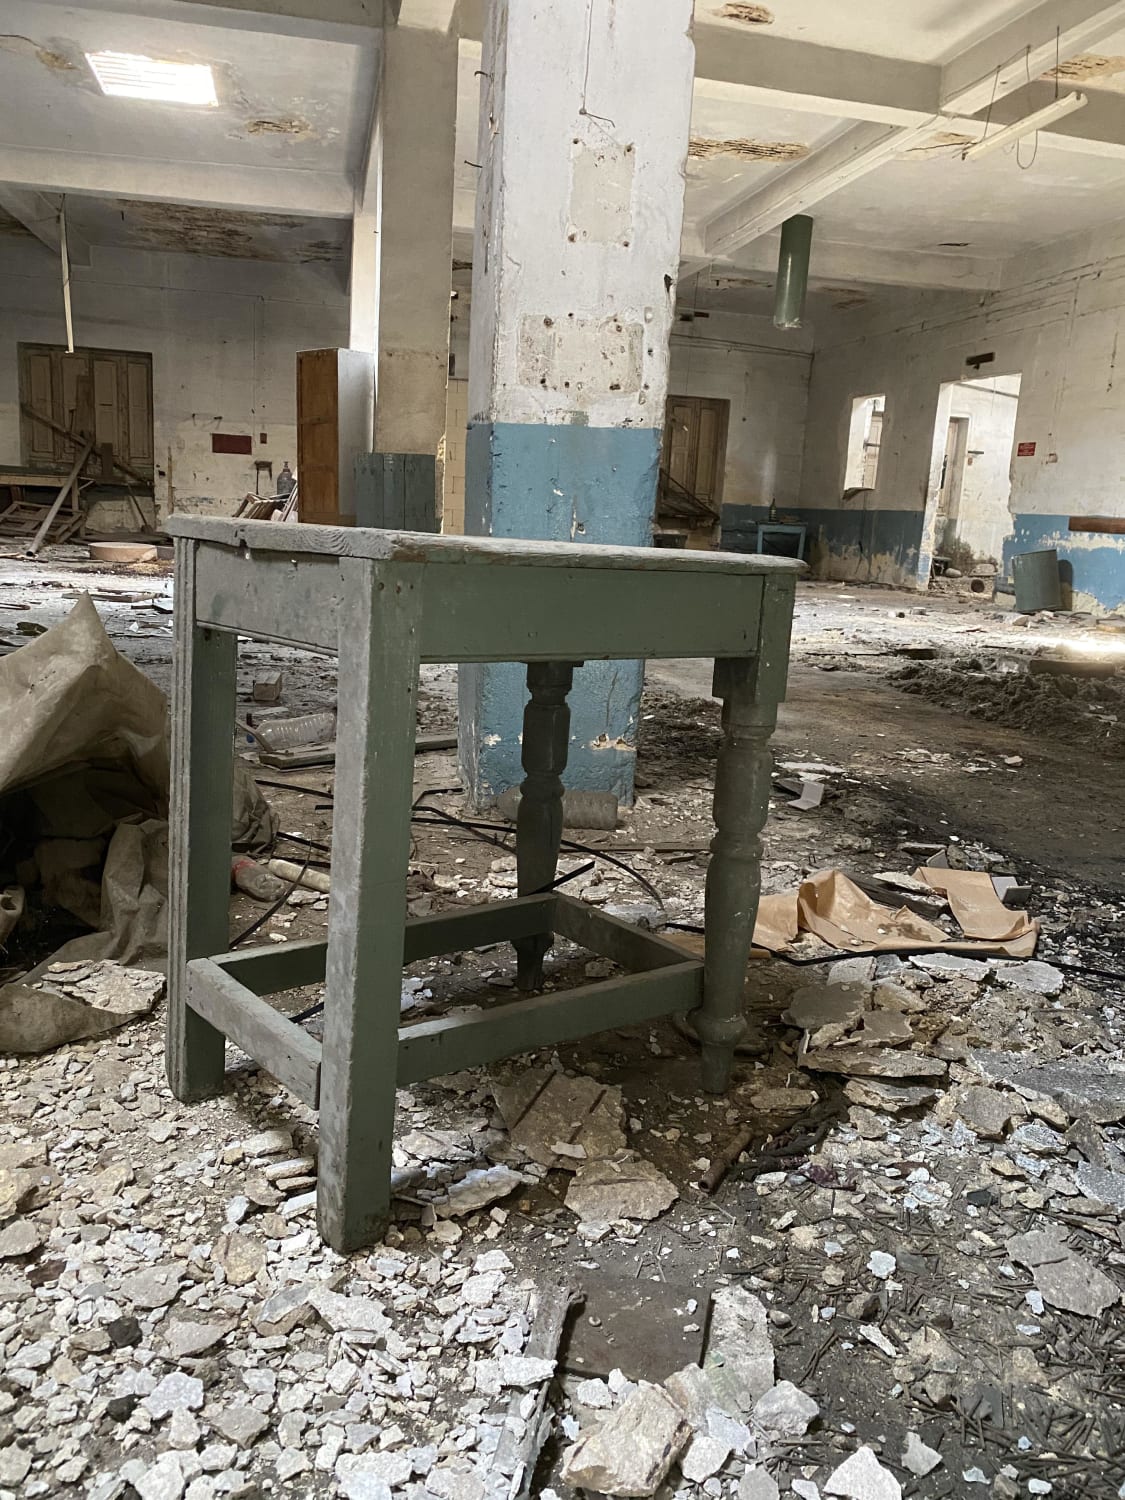 Abandoned match factory in Malta 🇲🇹 DM for more!! #forsakengems #instagram